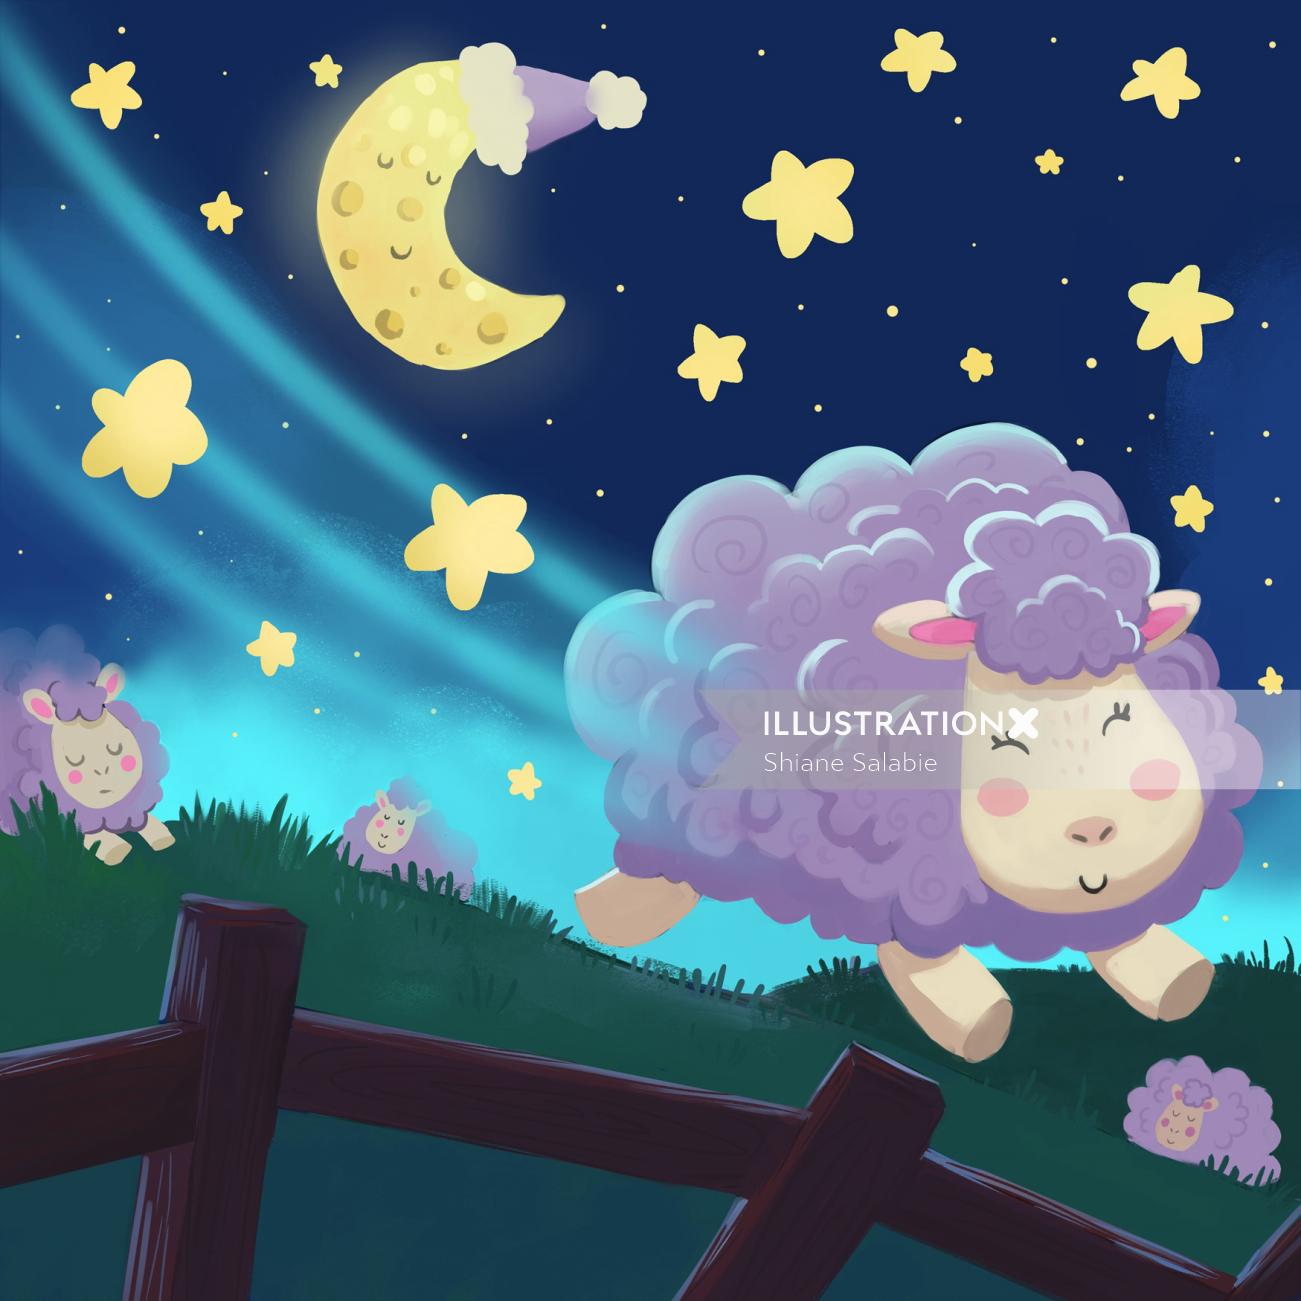 O design do personagem de uma ovelha cantora de ninar pula a cerca